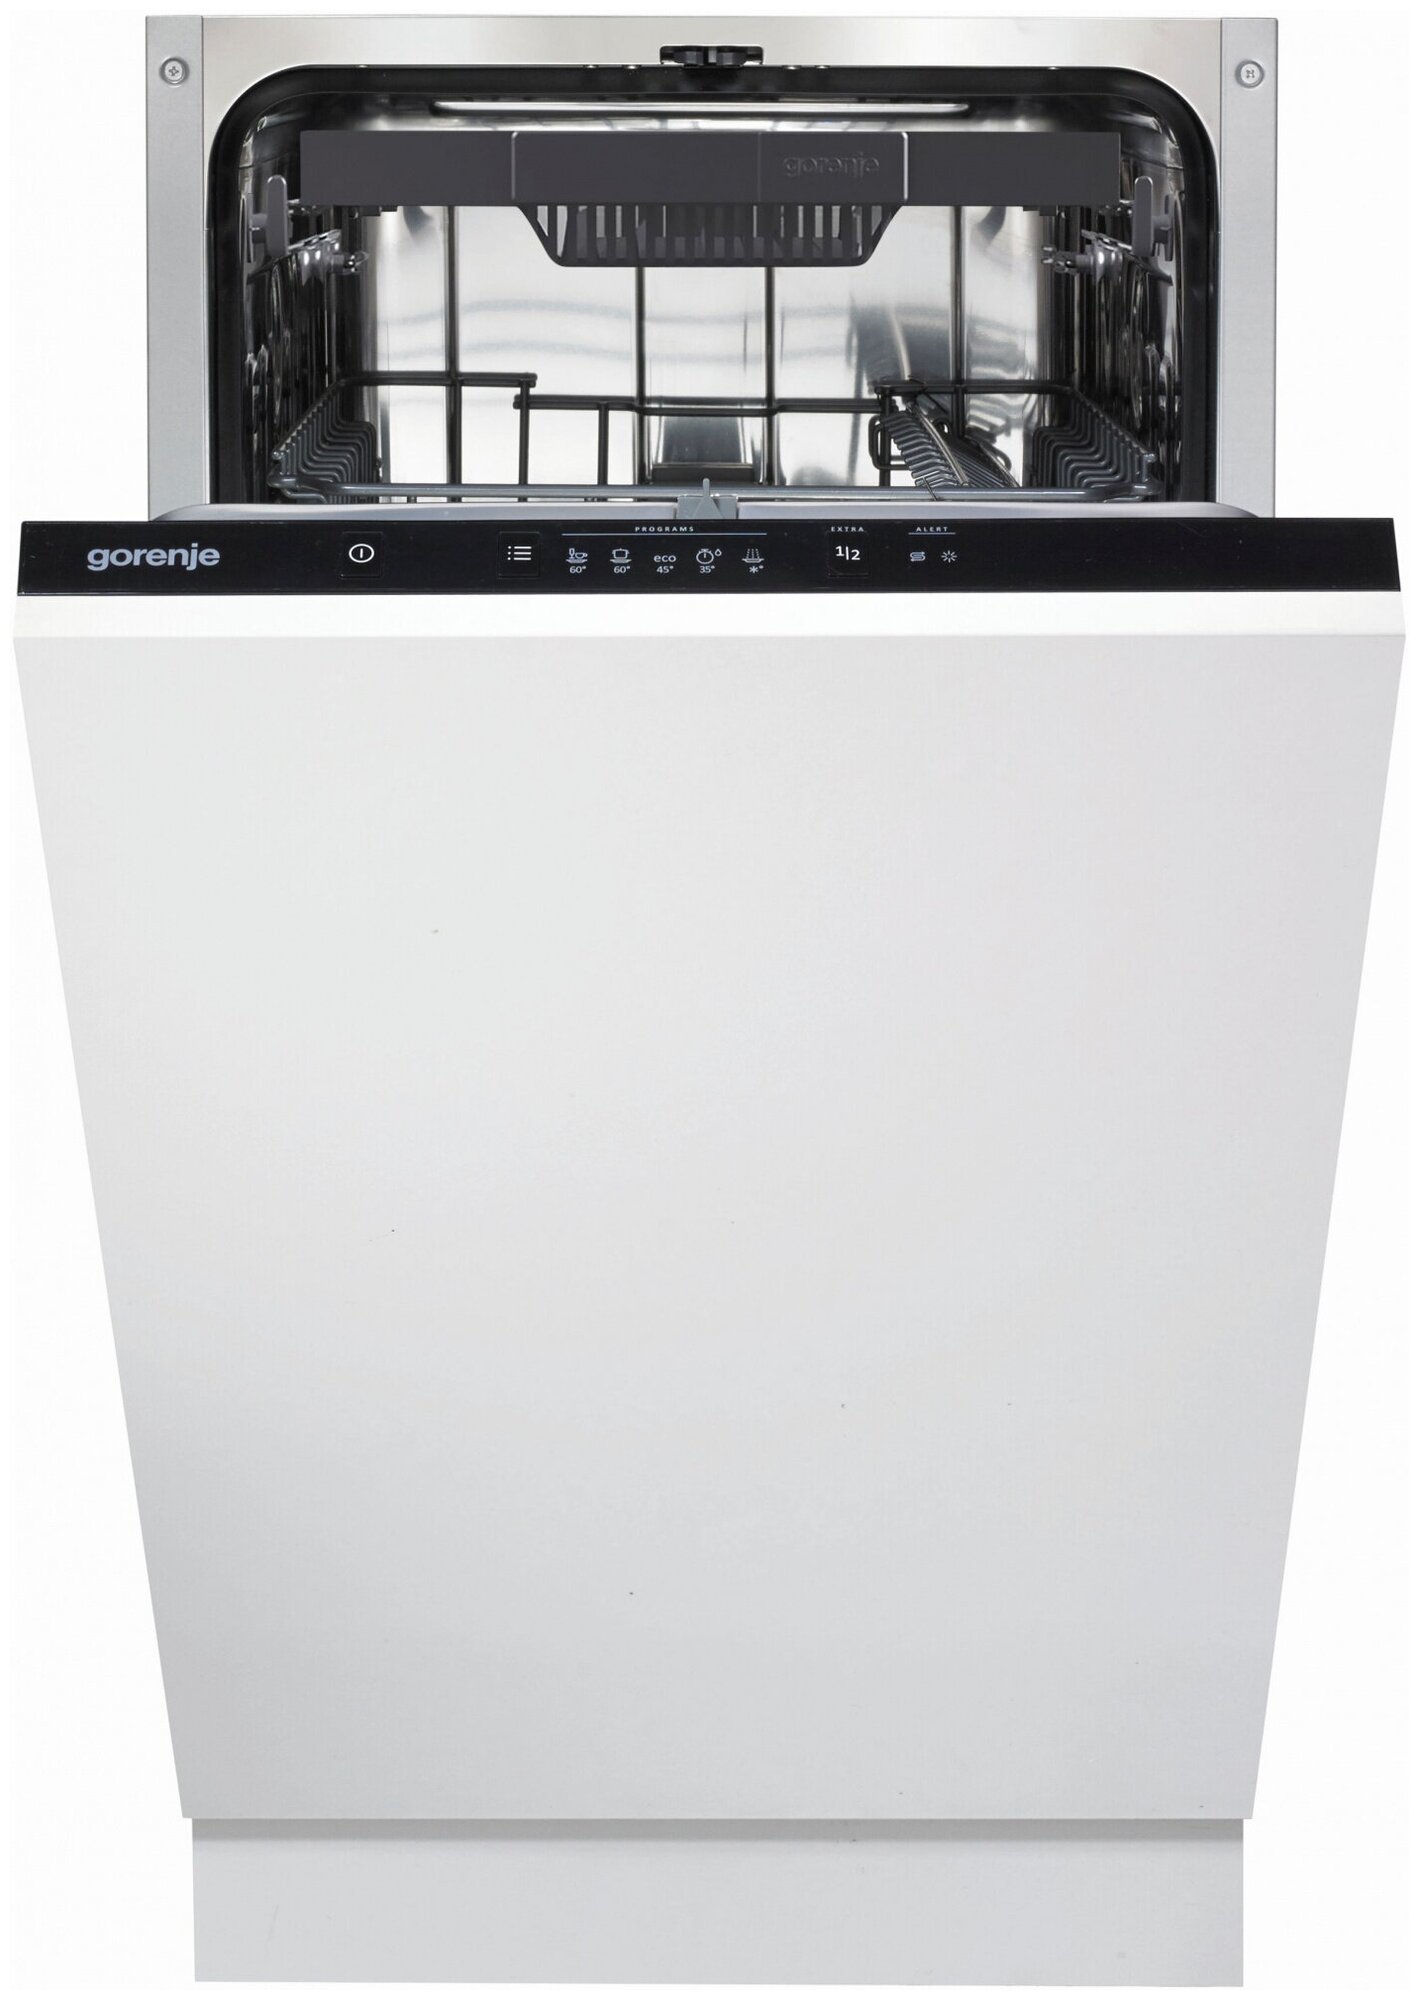 Посудомоечная машина Gorenje GV520E10, белый